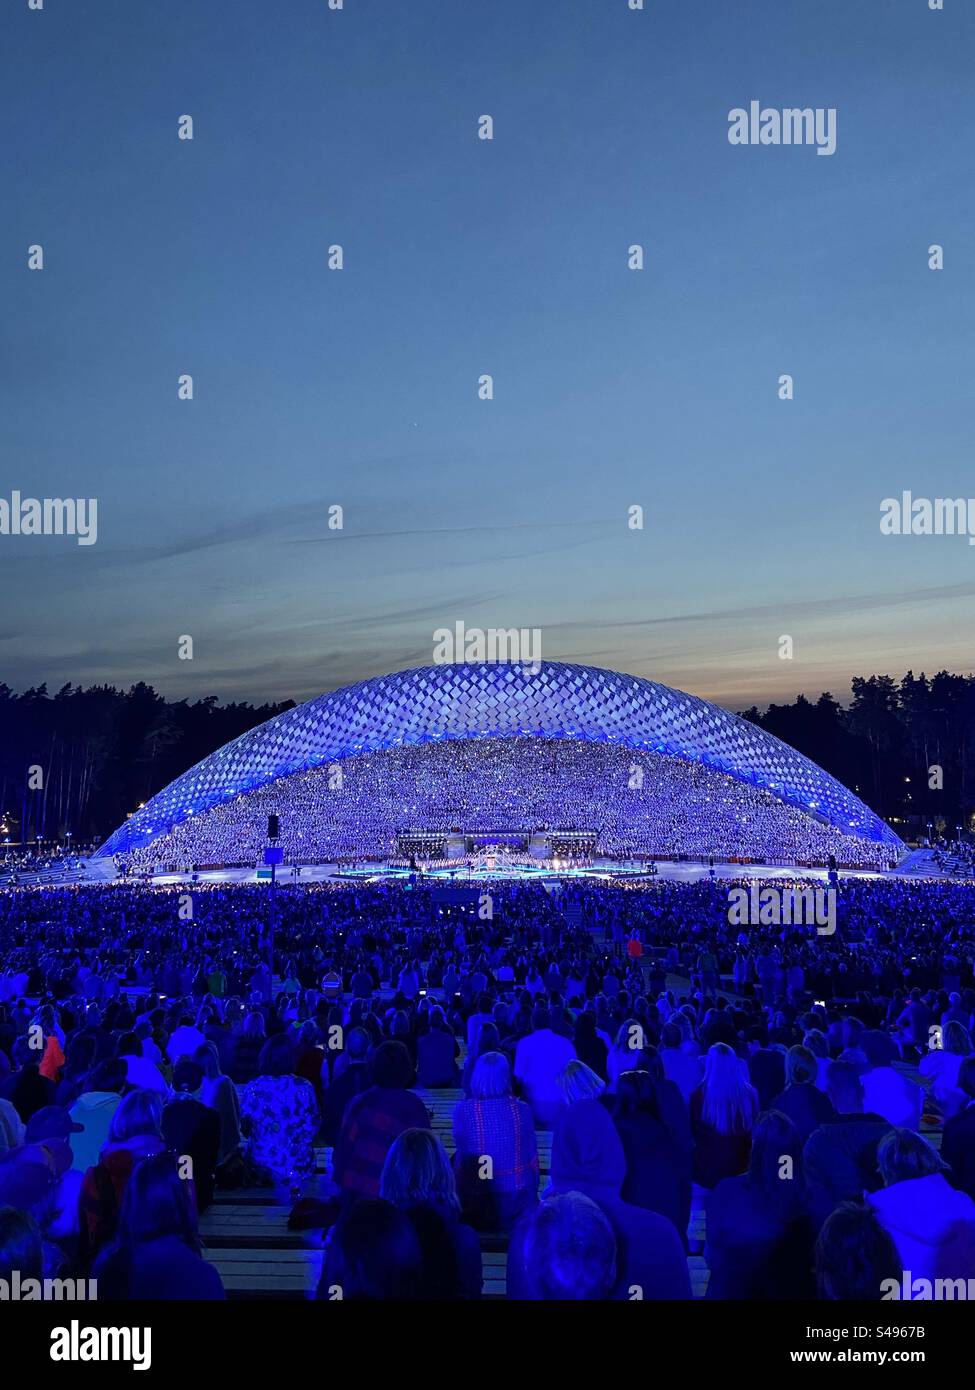 Leute, die das Konzert des lettischen Gesangs und Tanzfestivals am Veranstaltungsort des Großen Gesangs in Riga, Lettland, beobachten. Viele blaue Lichter und Lichteffekte auf der Bühne. Foto aufgenommen, wenn es dunkel wird Stockfoto